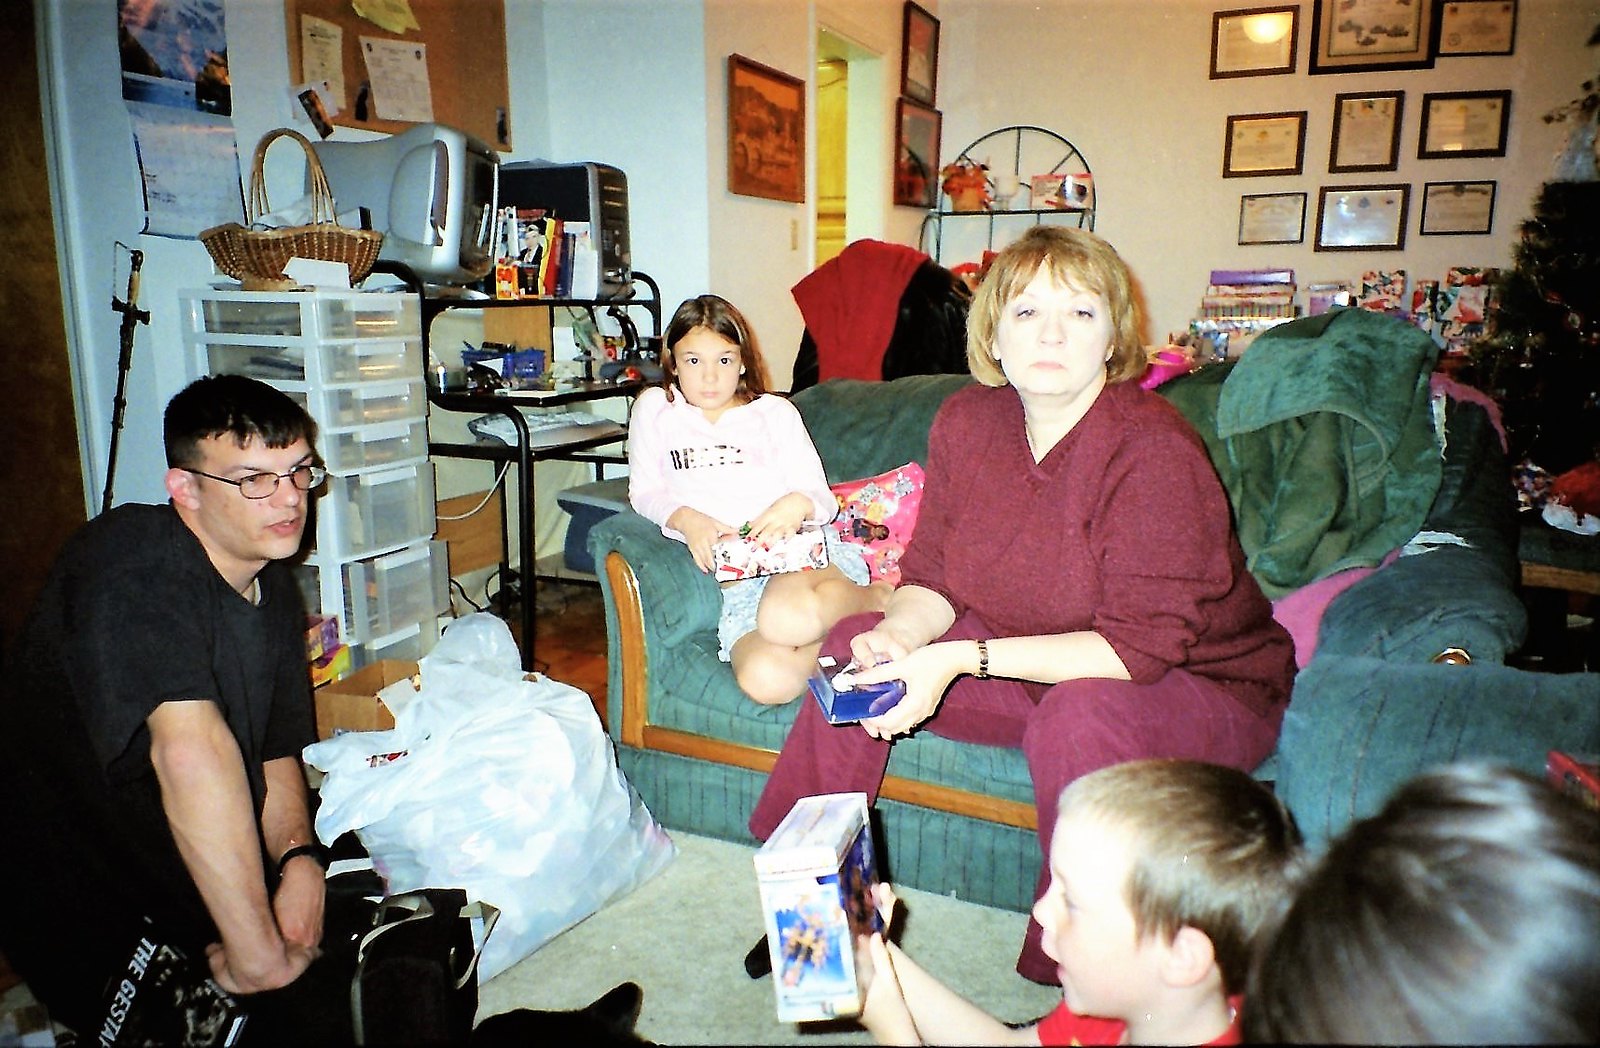 Membres d'une famille regardant leur petit garçon ouvrir son cadeau de Noël | Source : Flickr